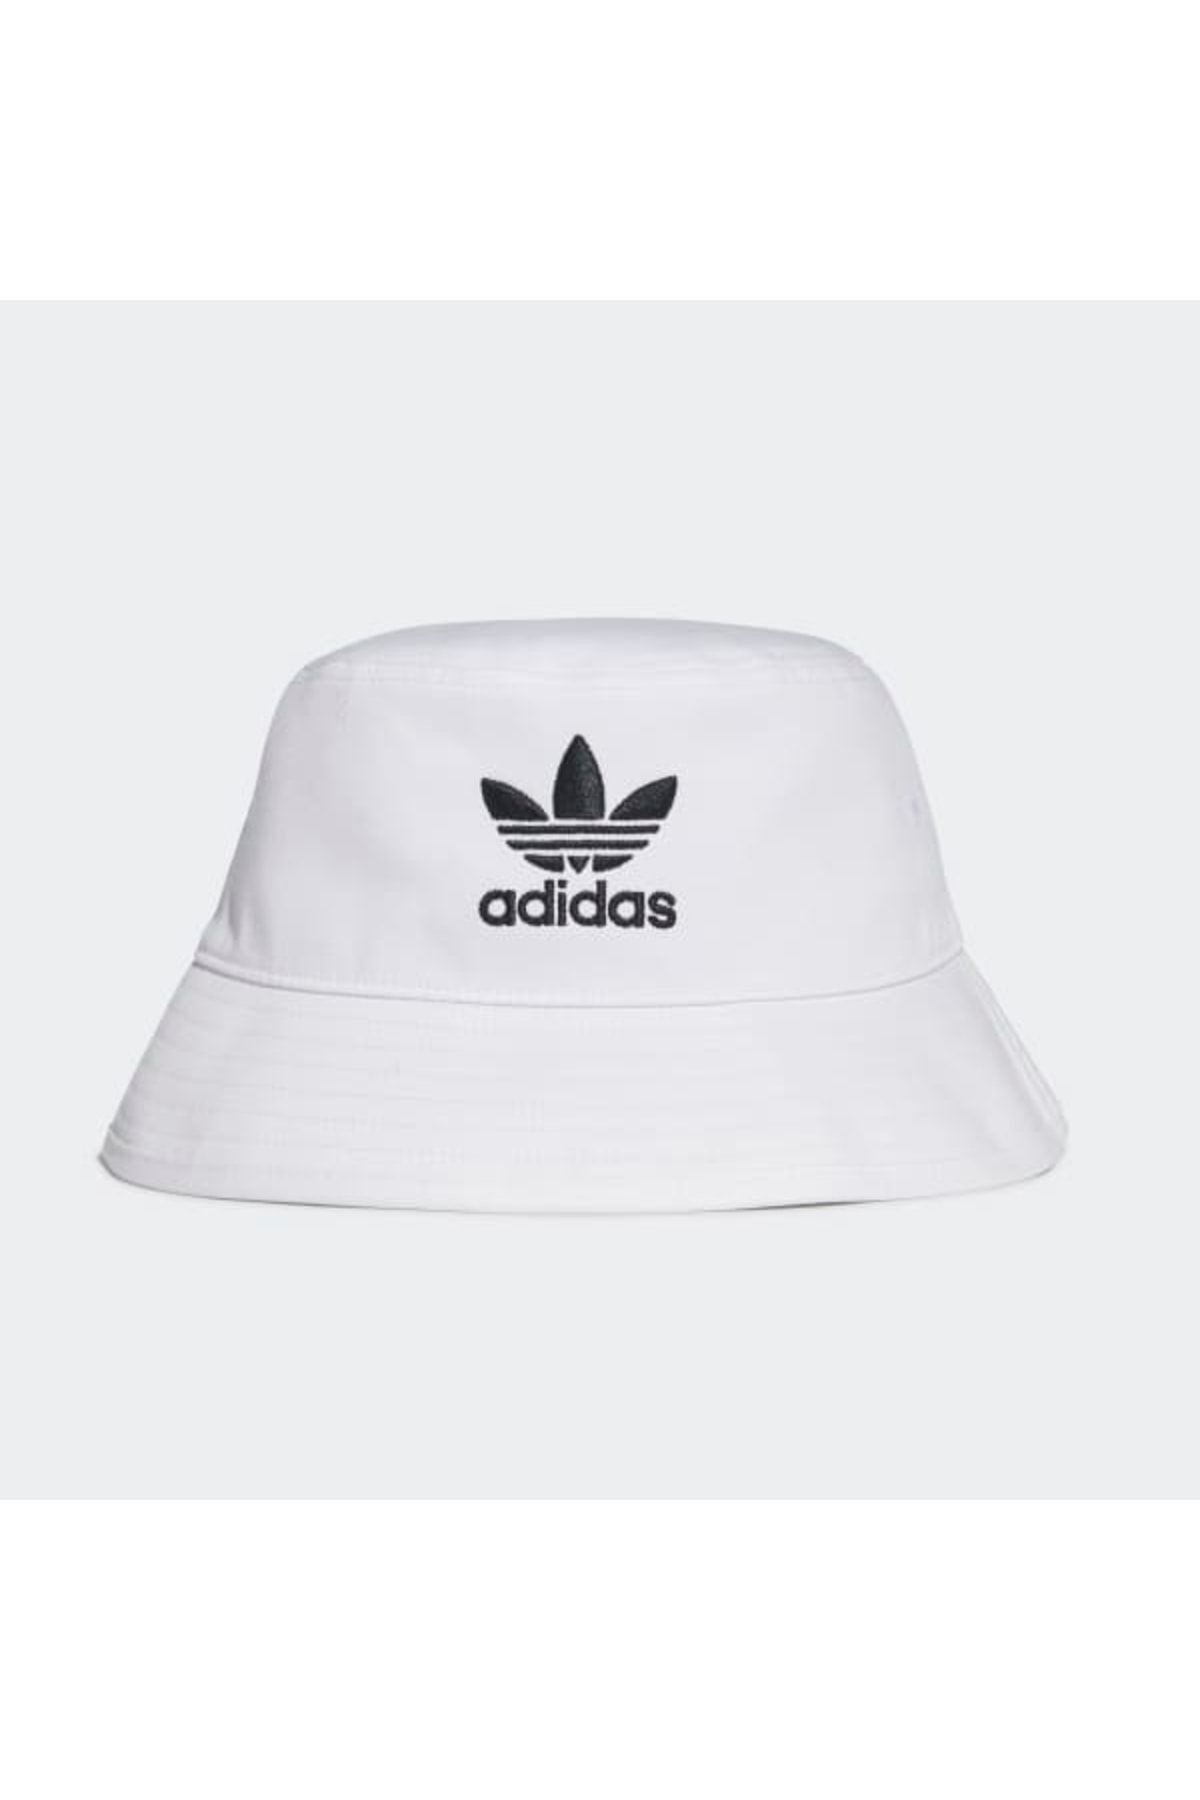 adidas Şapka Fq4641